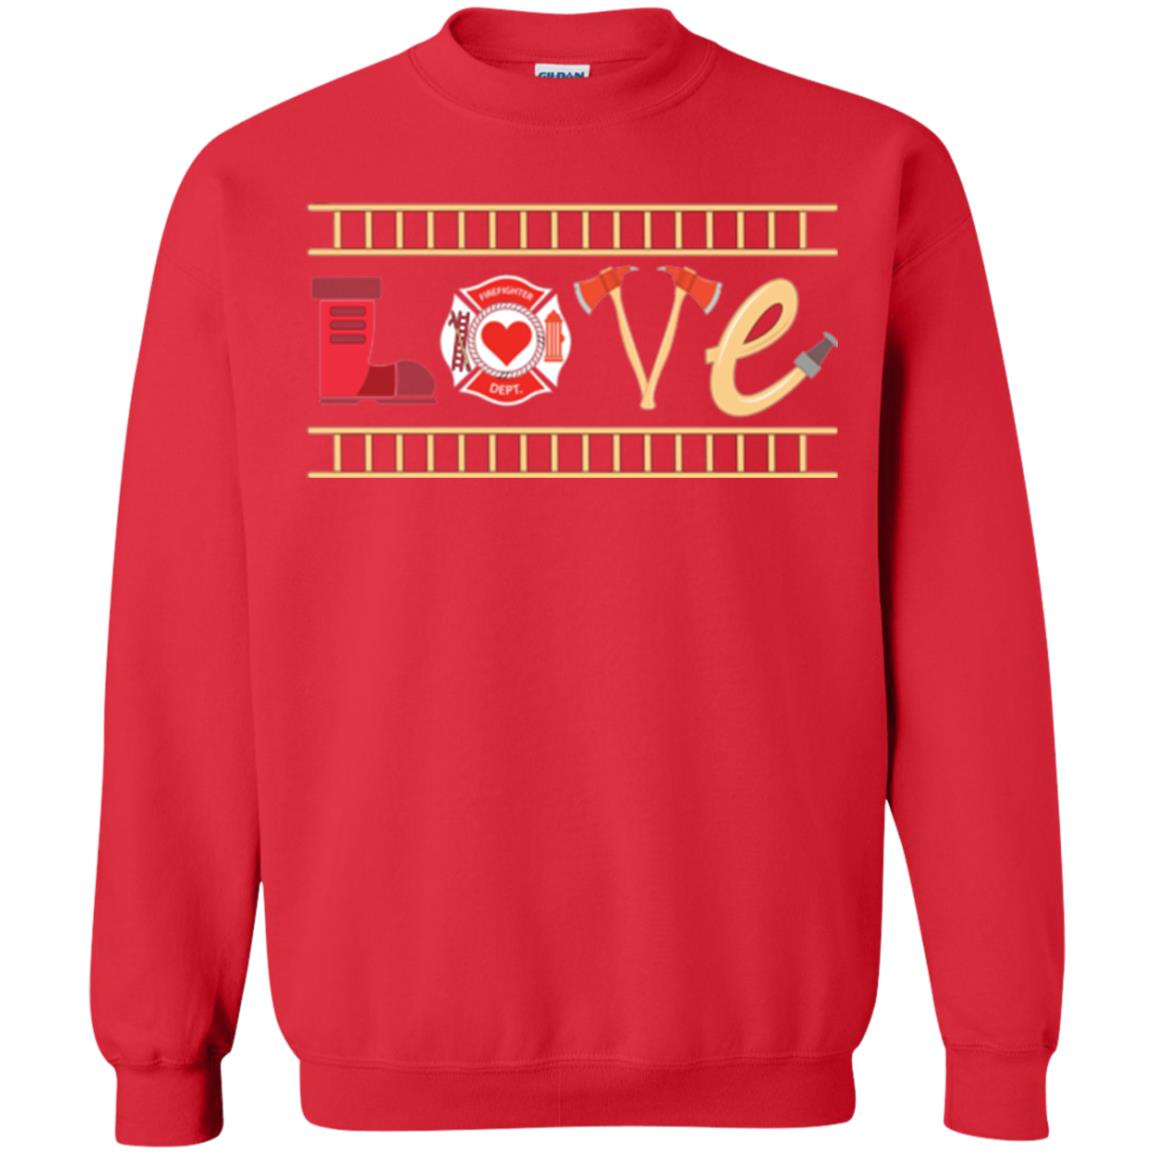 Inktee Store - Firefighter Dept Gift Kid Ladies Men Girl Outfit Sweatshirt Image